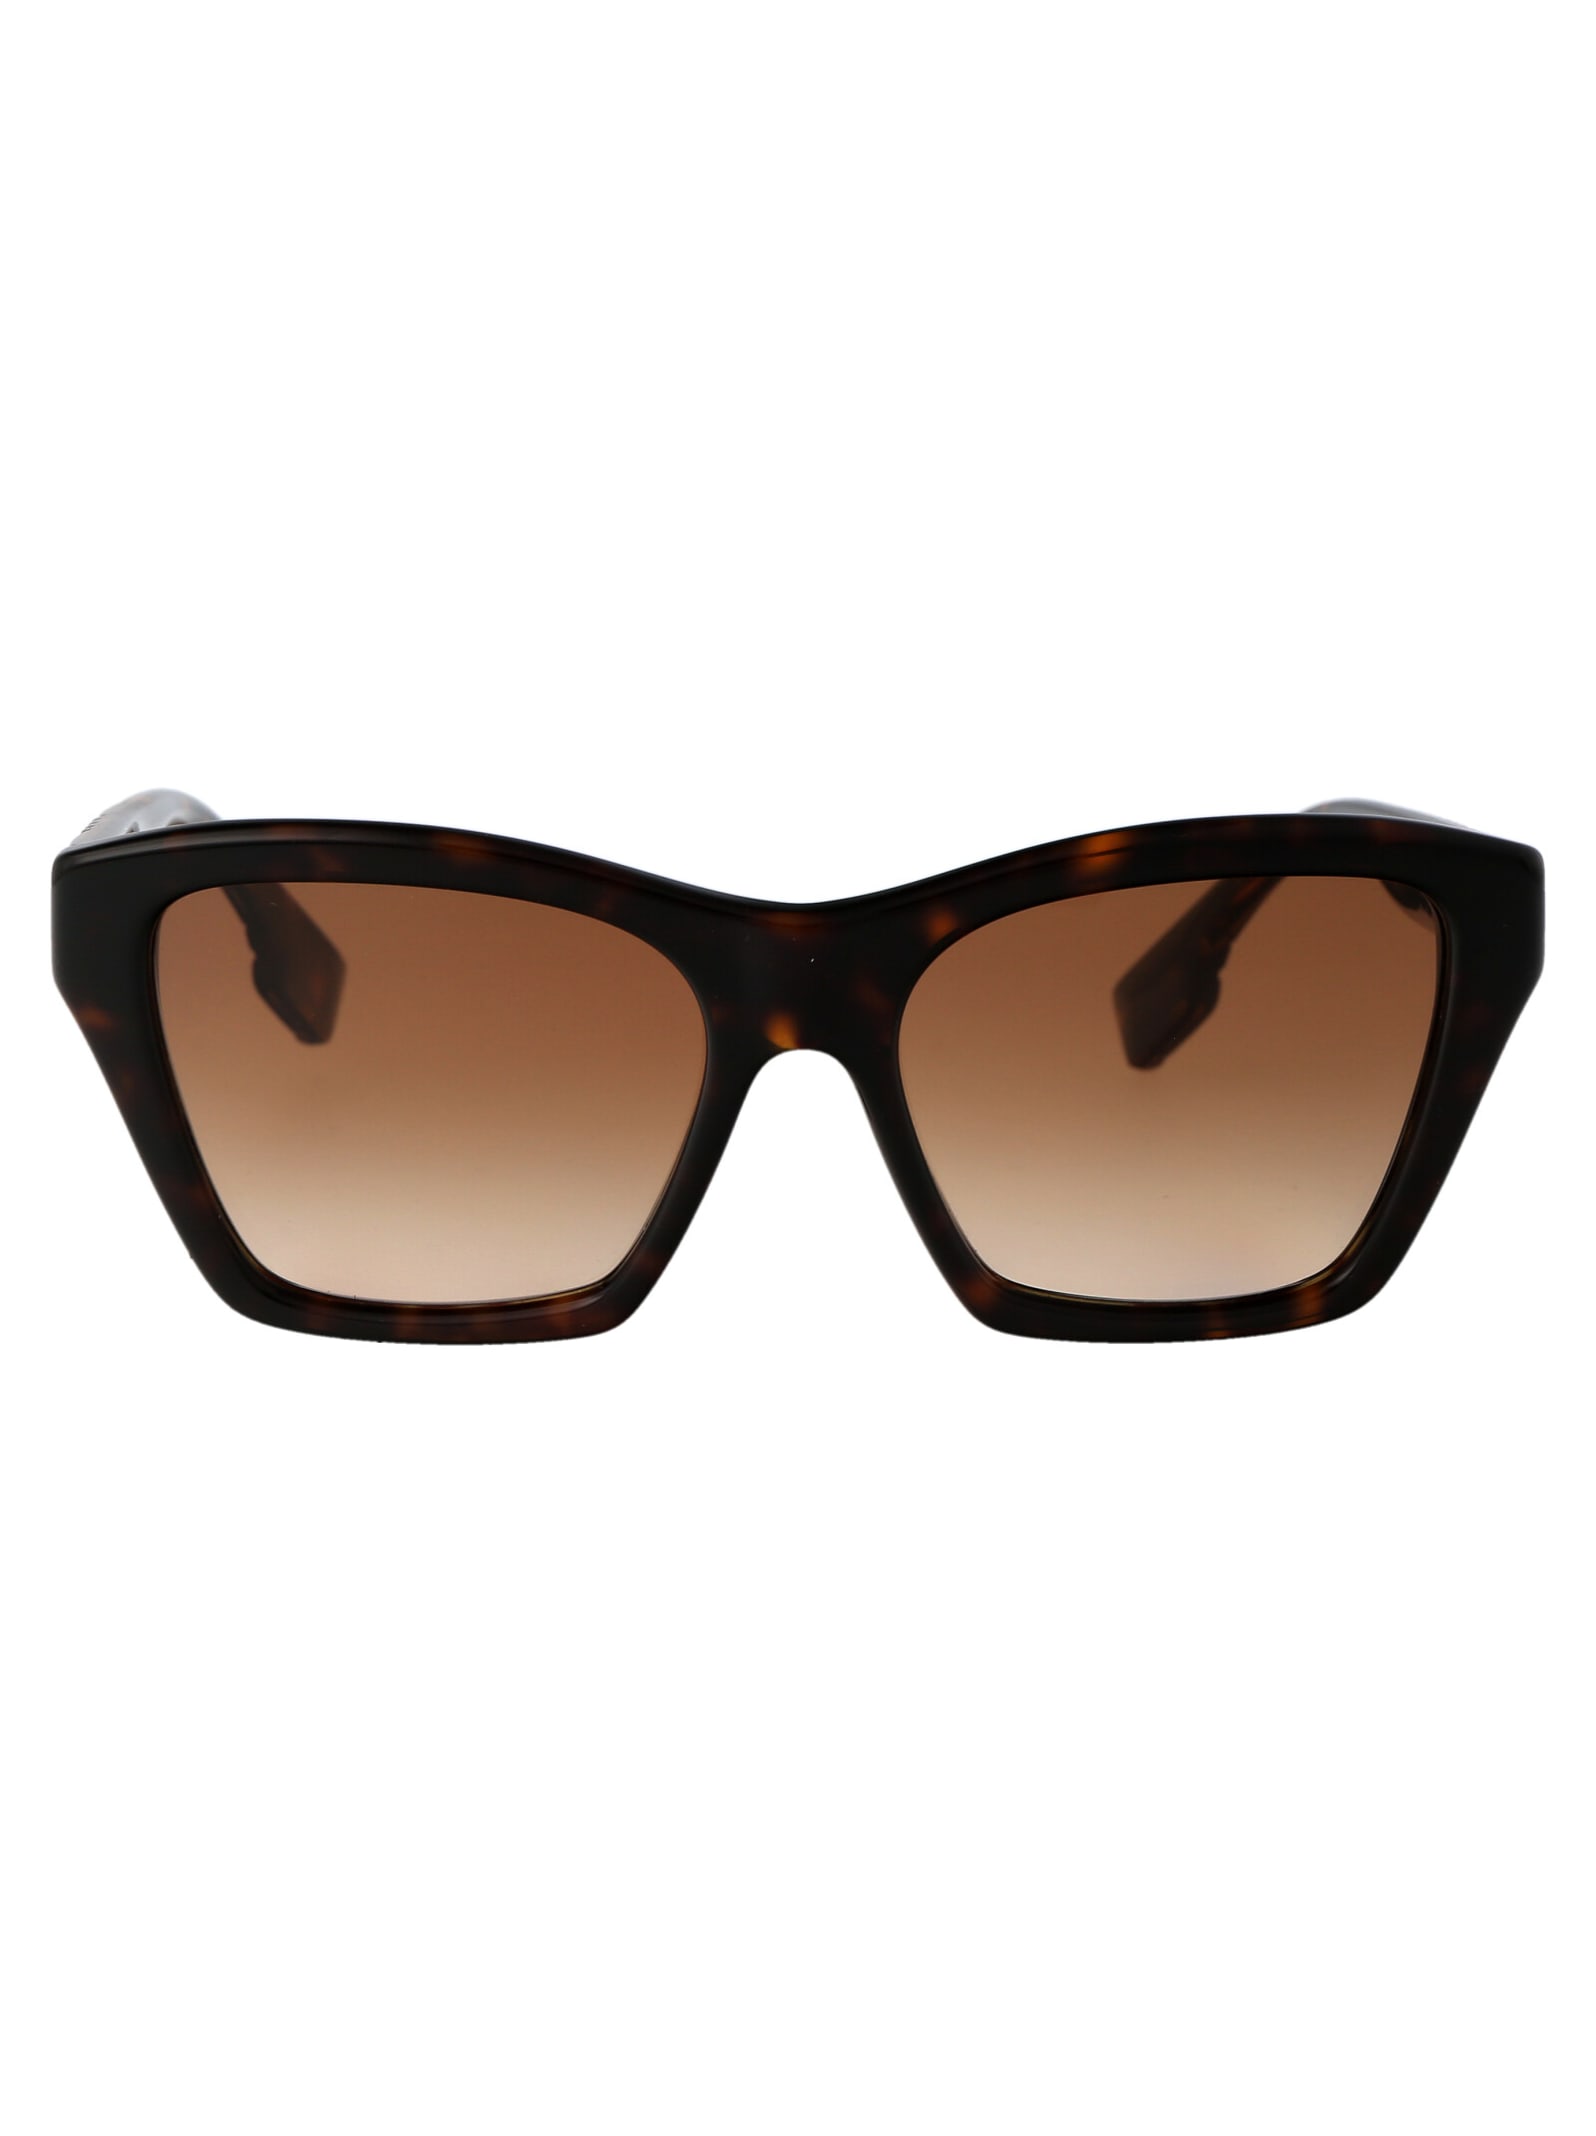 Burberry Eyewear Arden Sunglasses